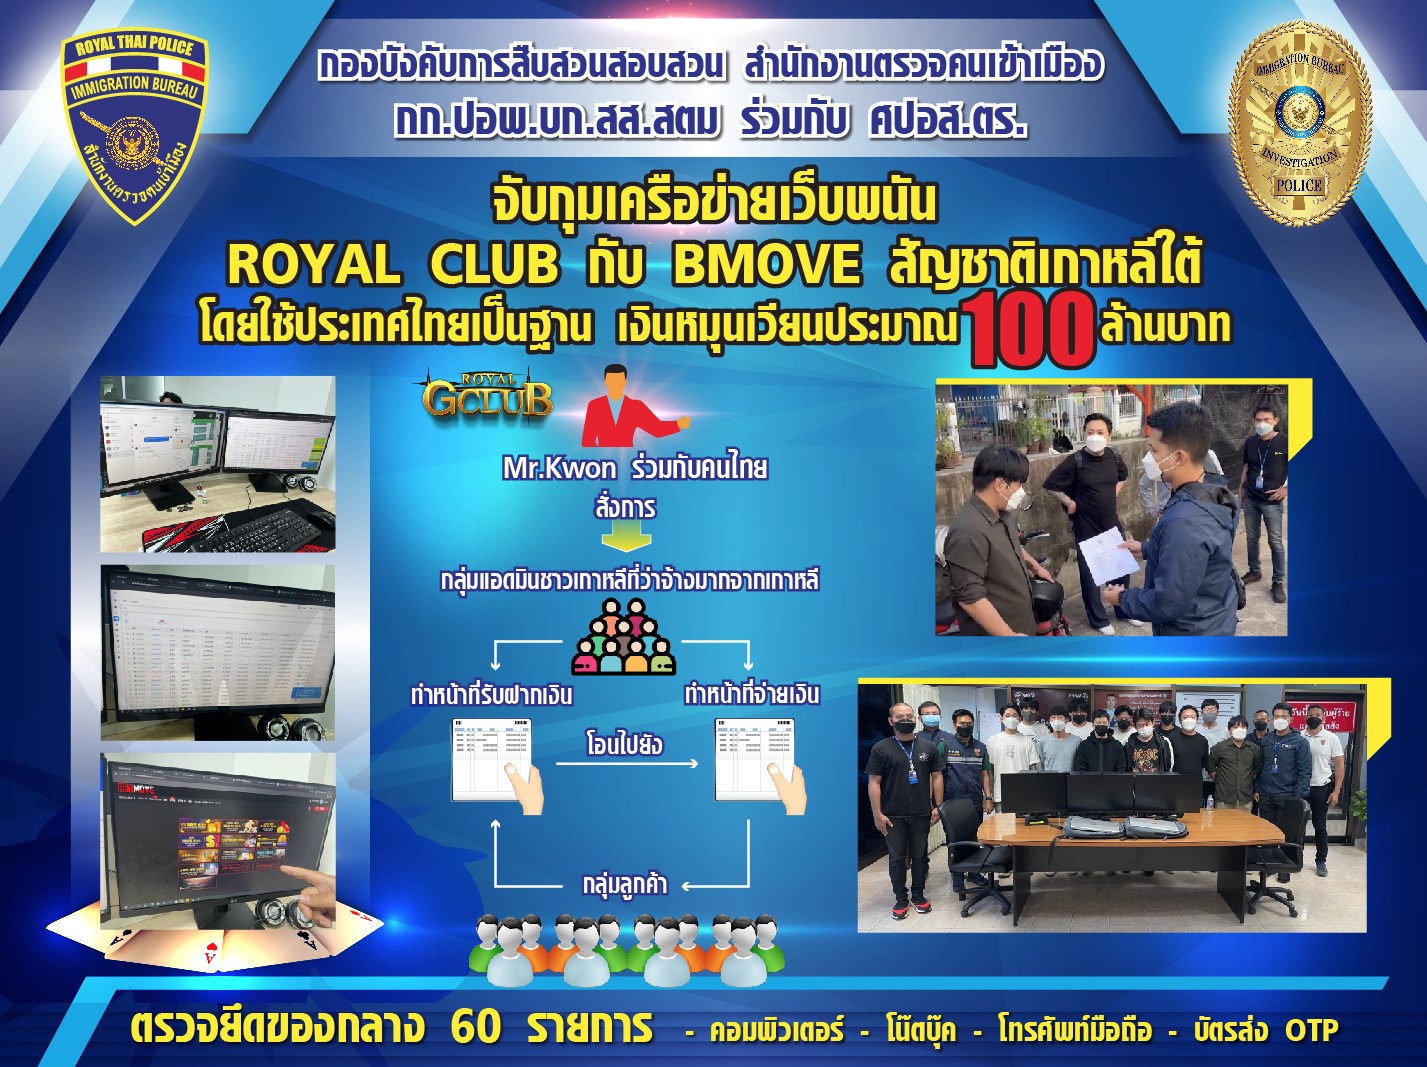 パタヤで韓国人11人逮捕、オンライン賭博サイトの拠点を摘発 | タイランドハイパーリンクス：Thai Hyper